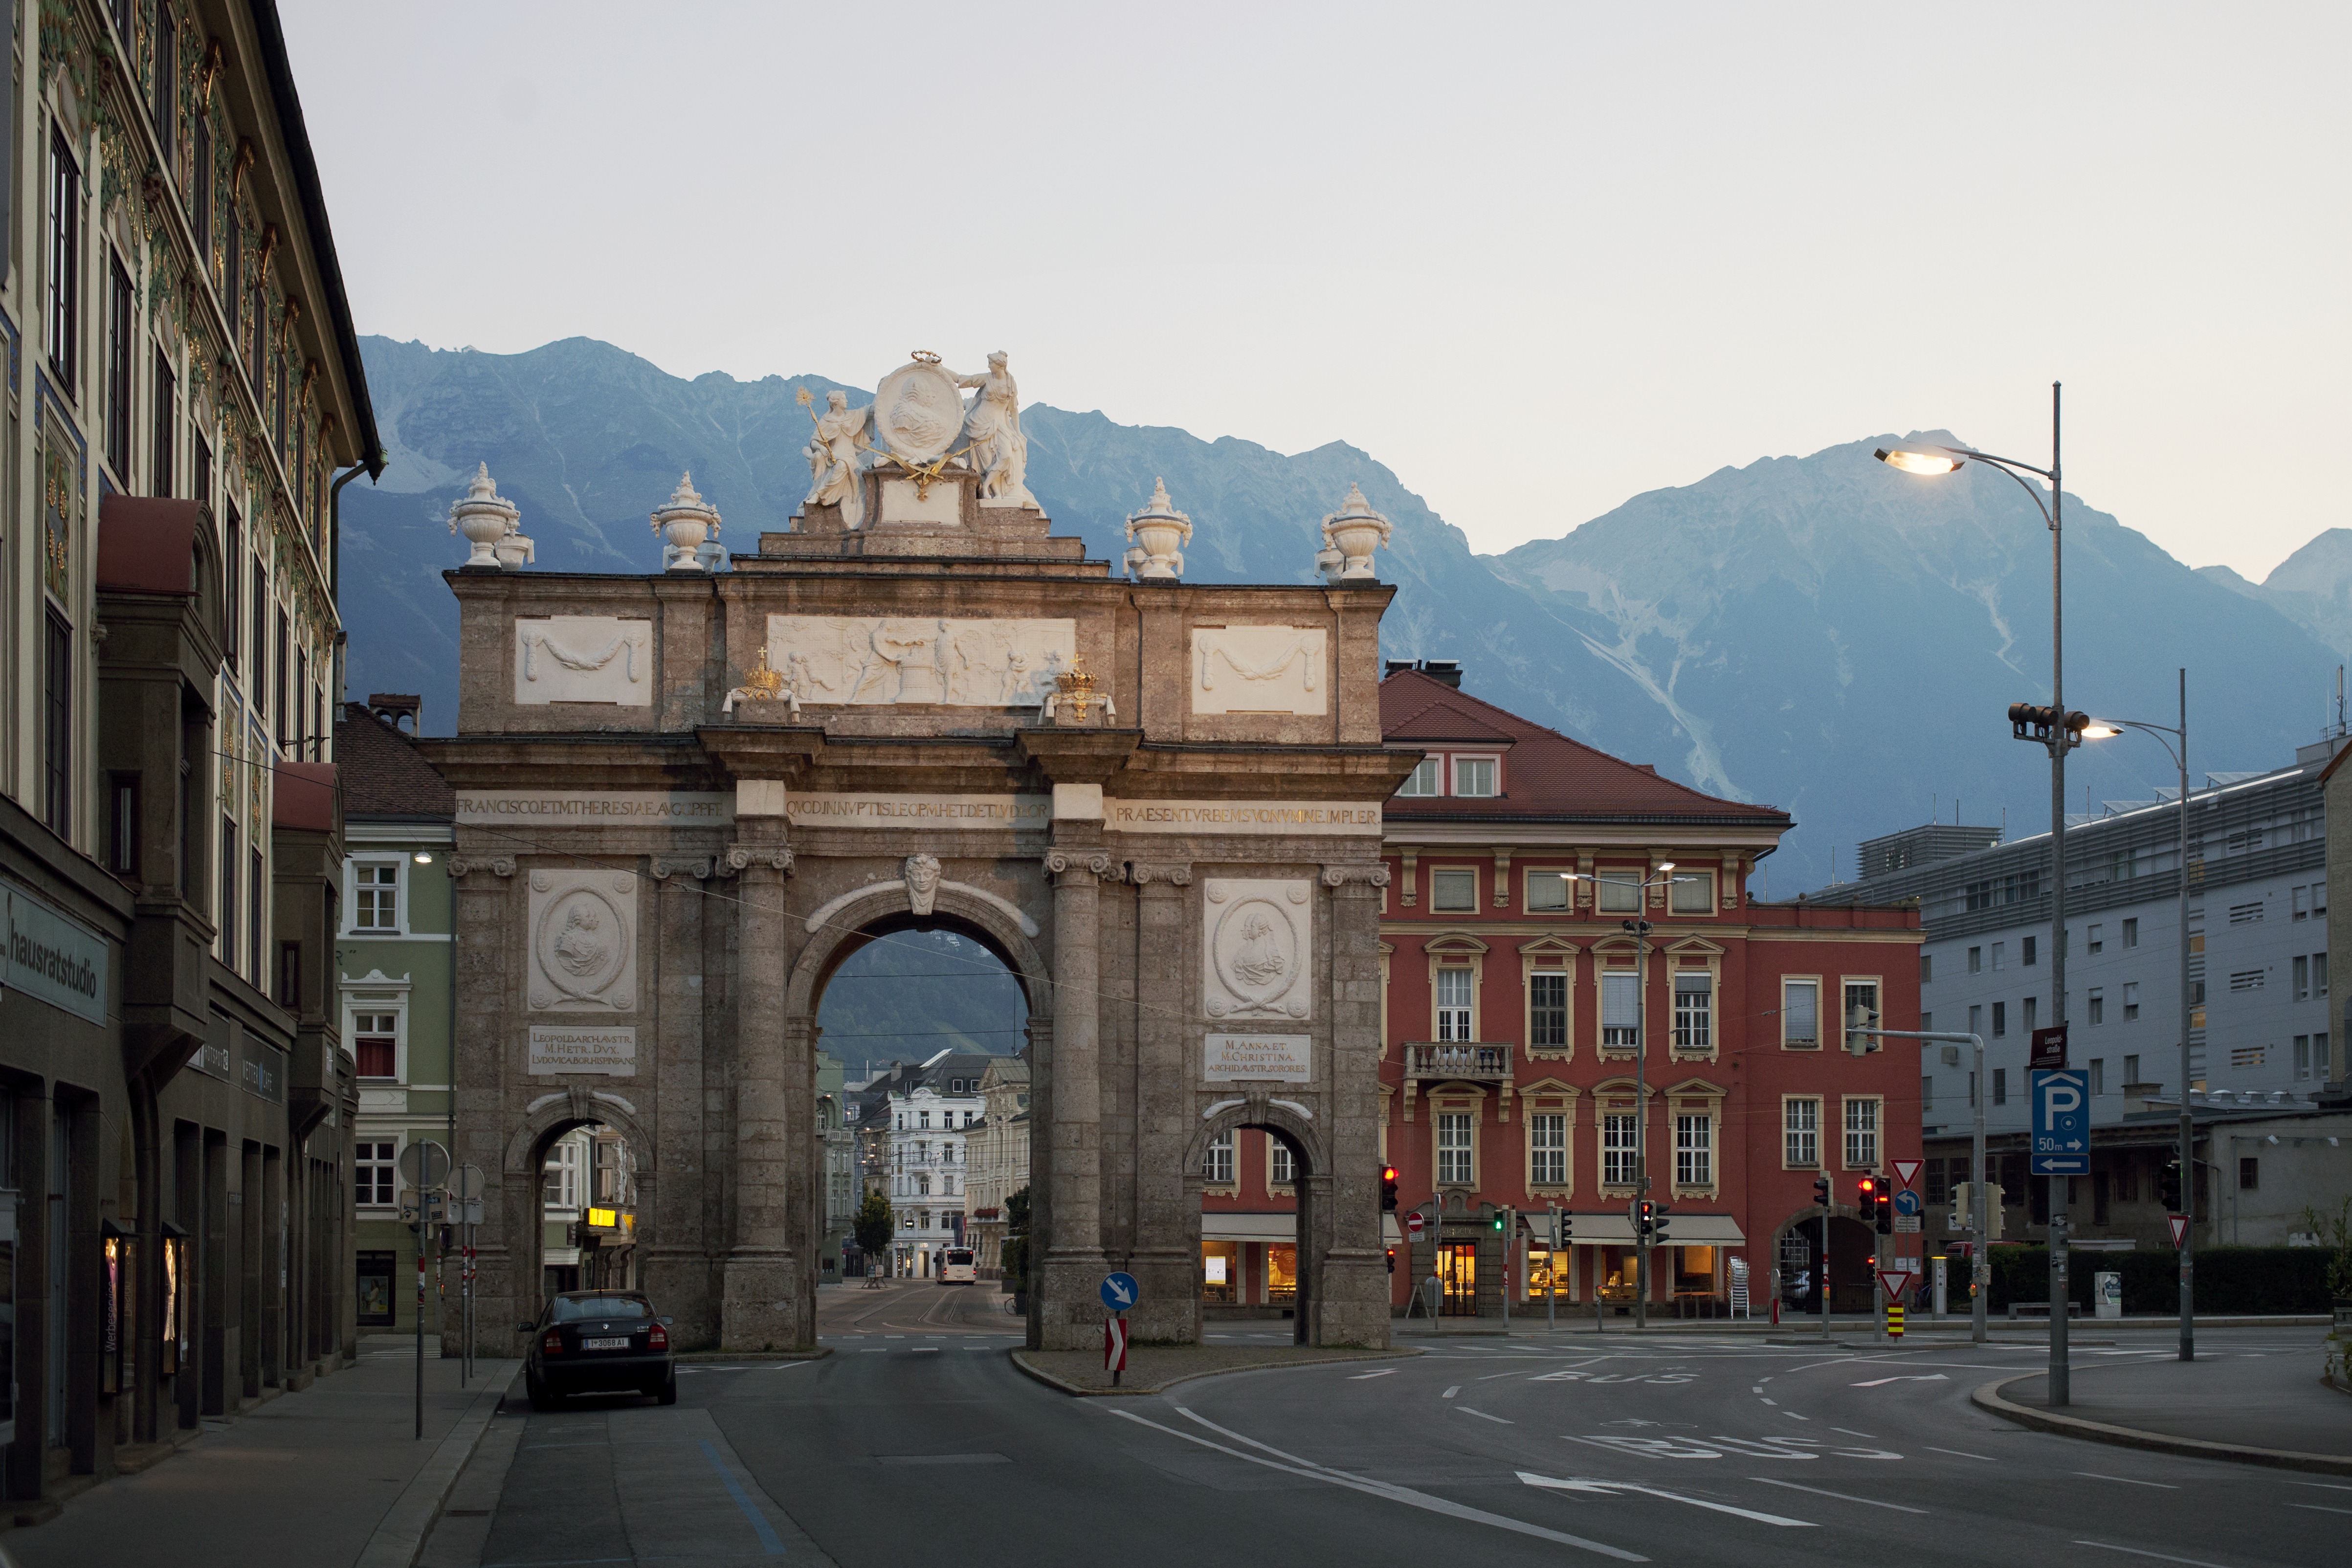 <p>L'imposante Porte de triomphe d'Innsbruck. Ici du côté joyeux.</p>
